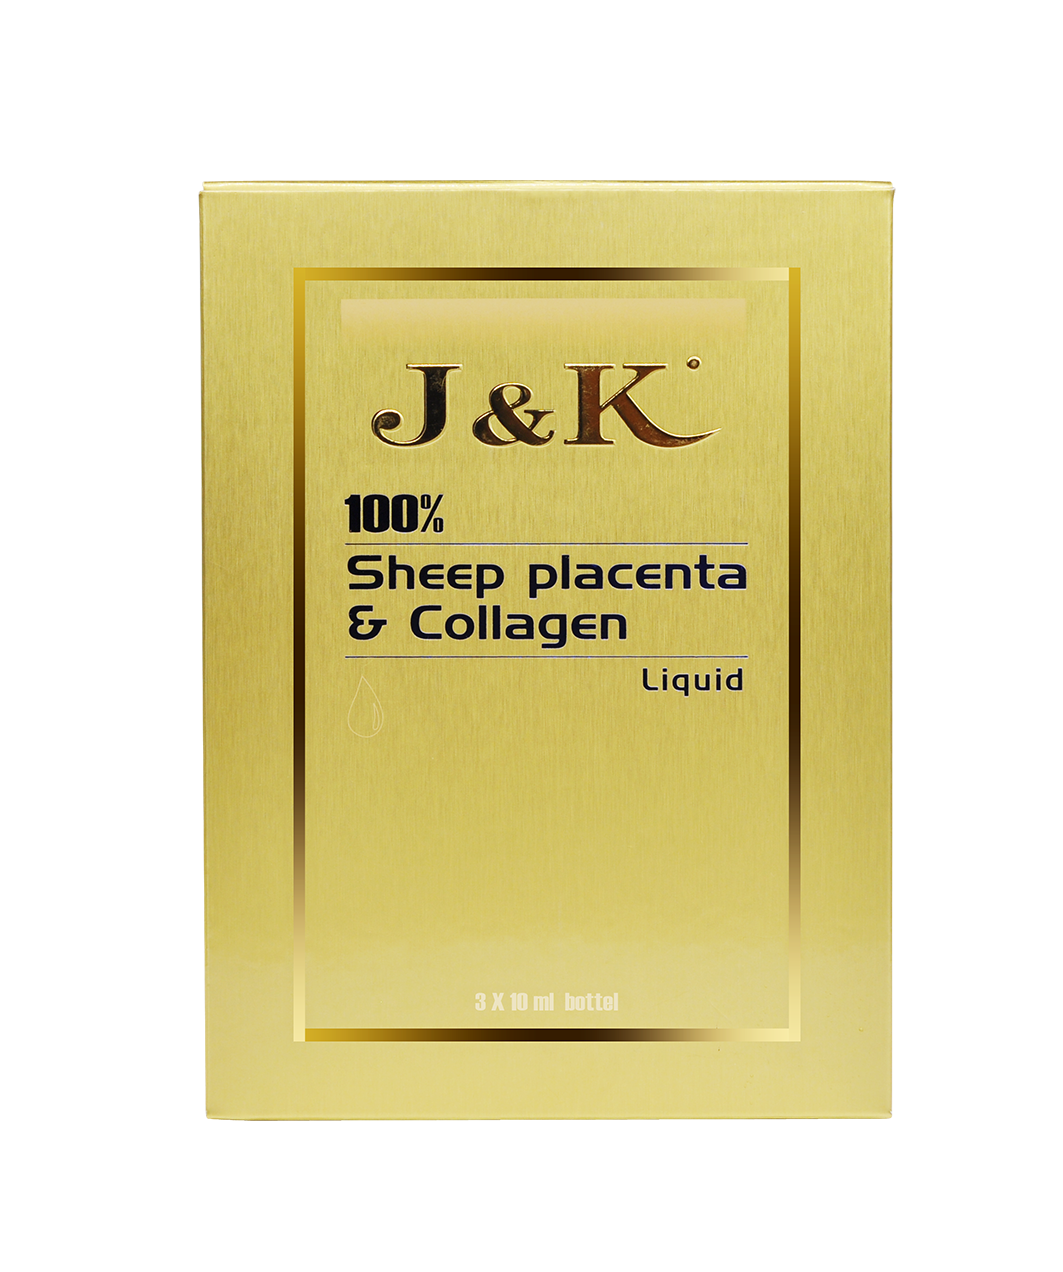 J&K 100%Sheep placenta & collagen liquid